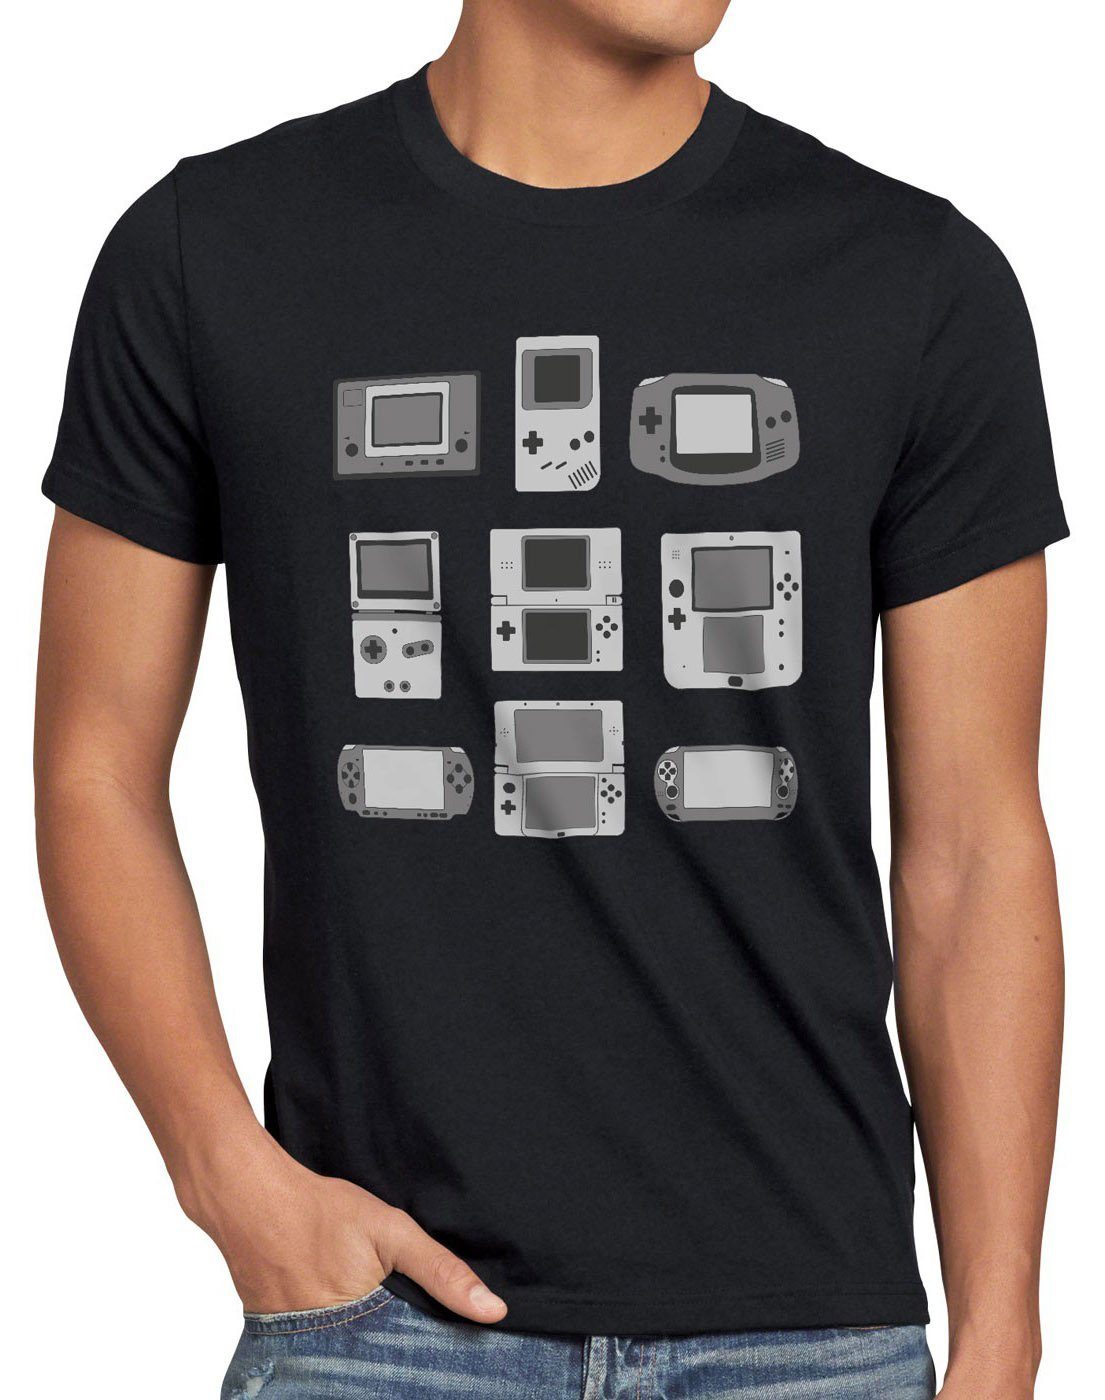 videospiel Handheld Herren T-Shirt Konsole style3 schwarz controller spielekonsole Print-Shirt